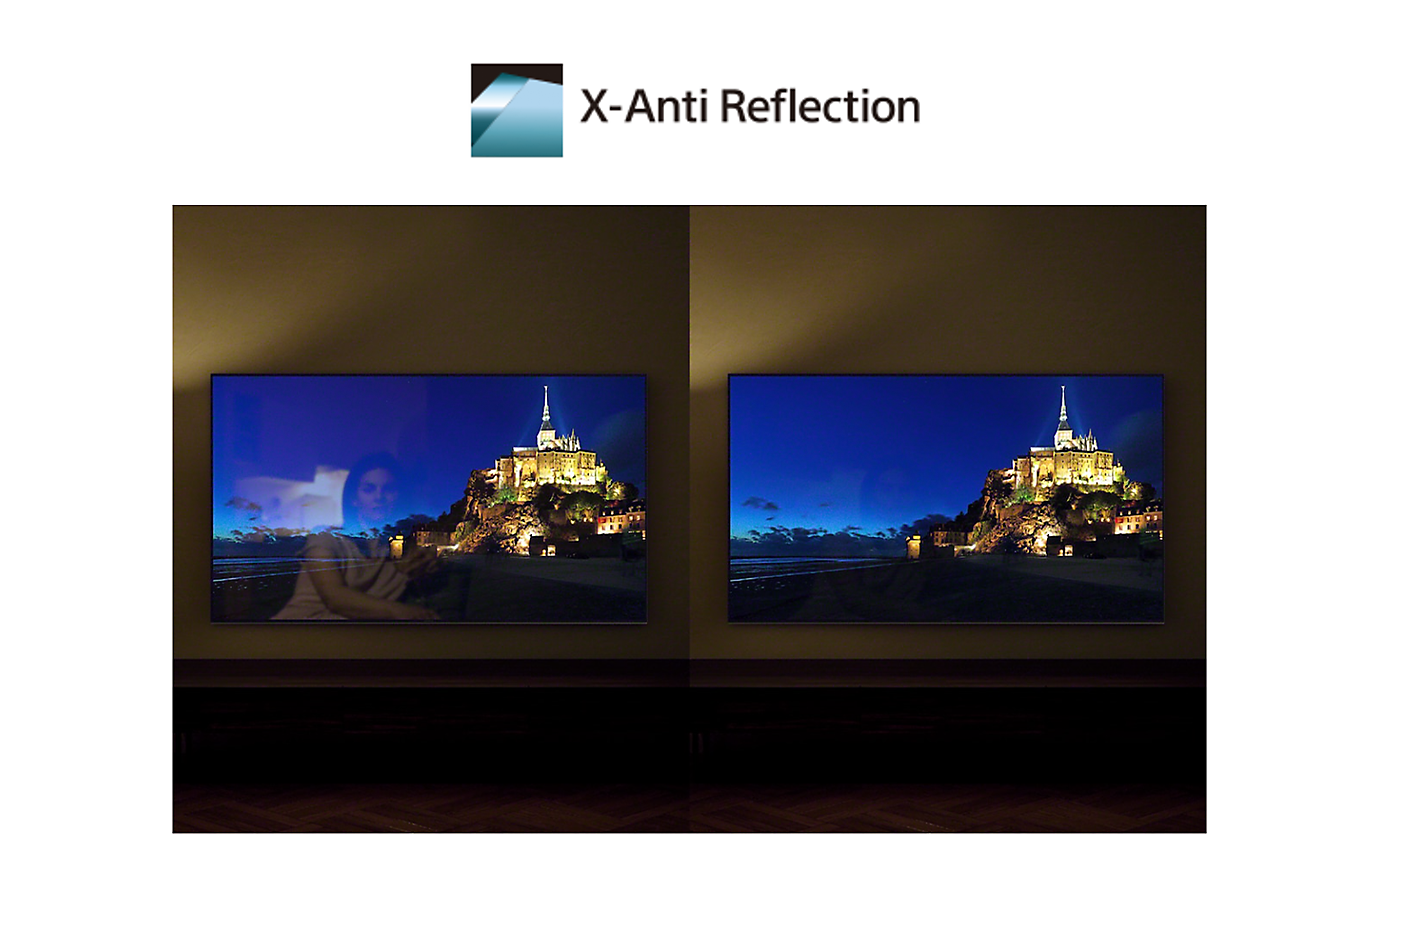 Comparación de pantallas con y sin X-Anti Reflection